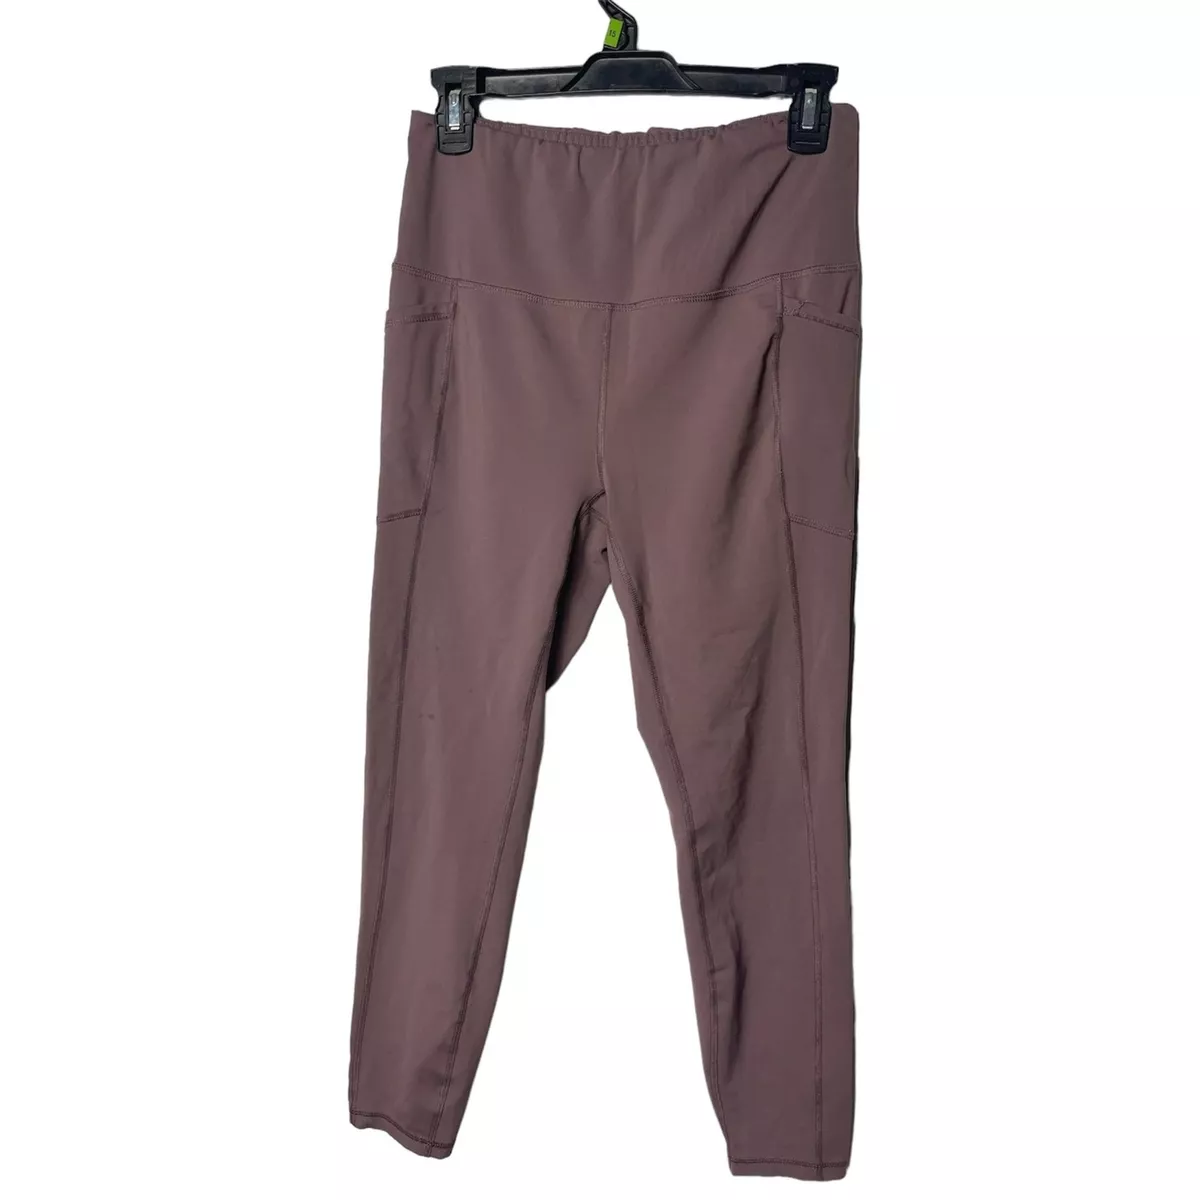 RBX Women’s athletic pants/leggings Light Purple Size Large